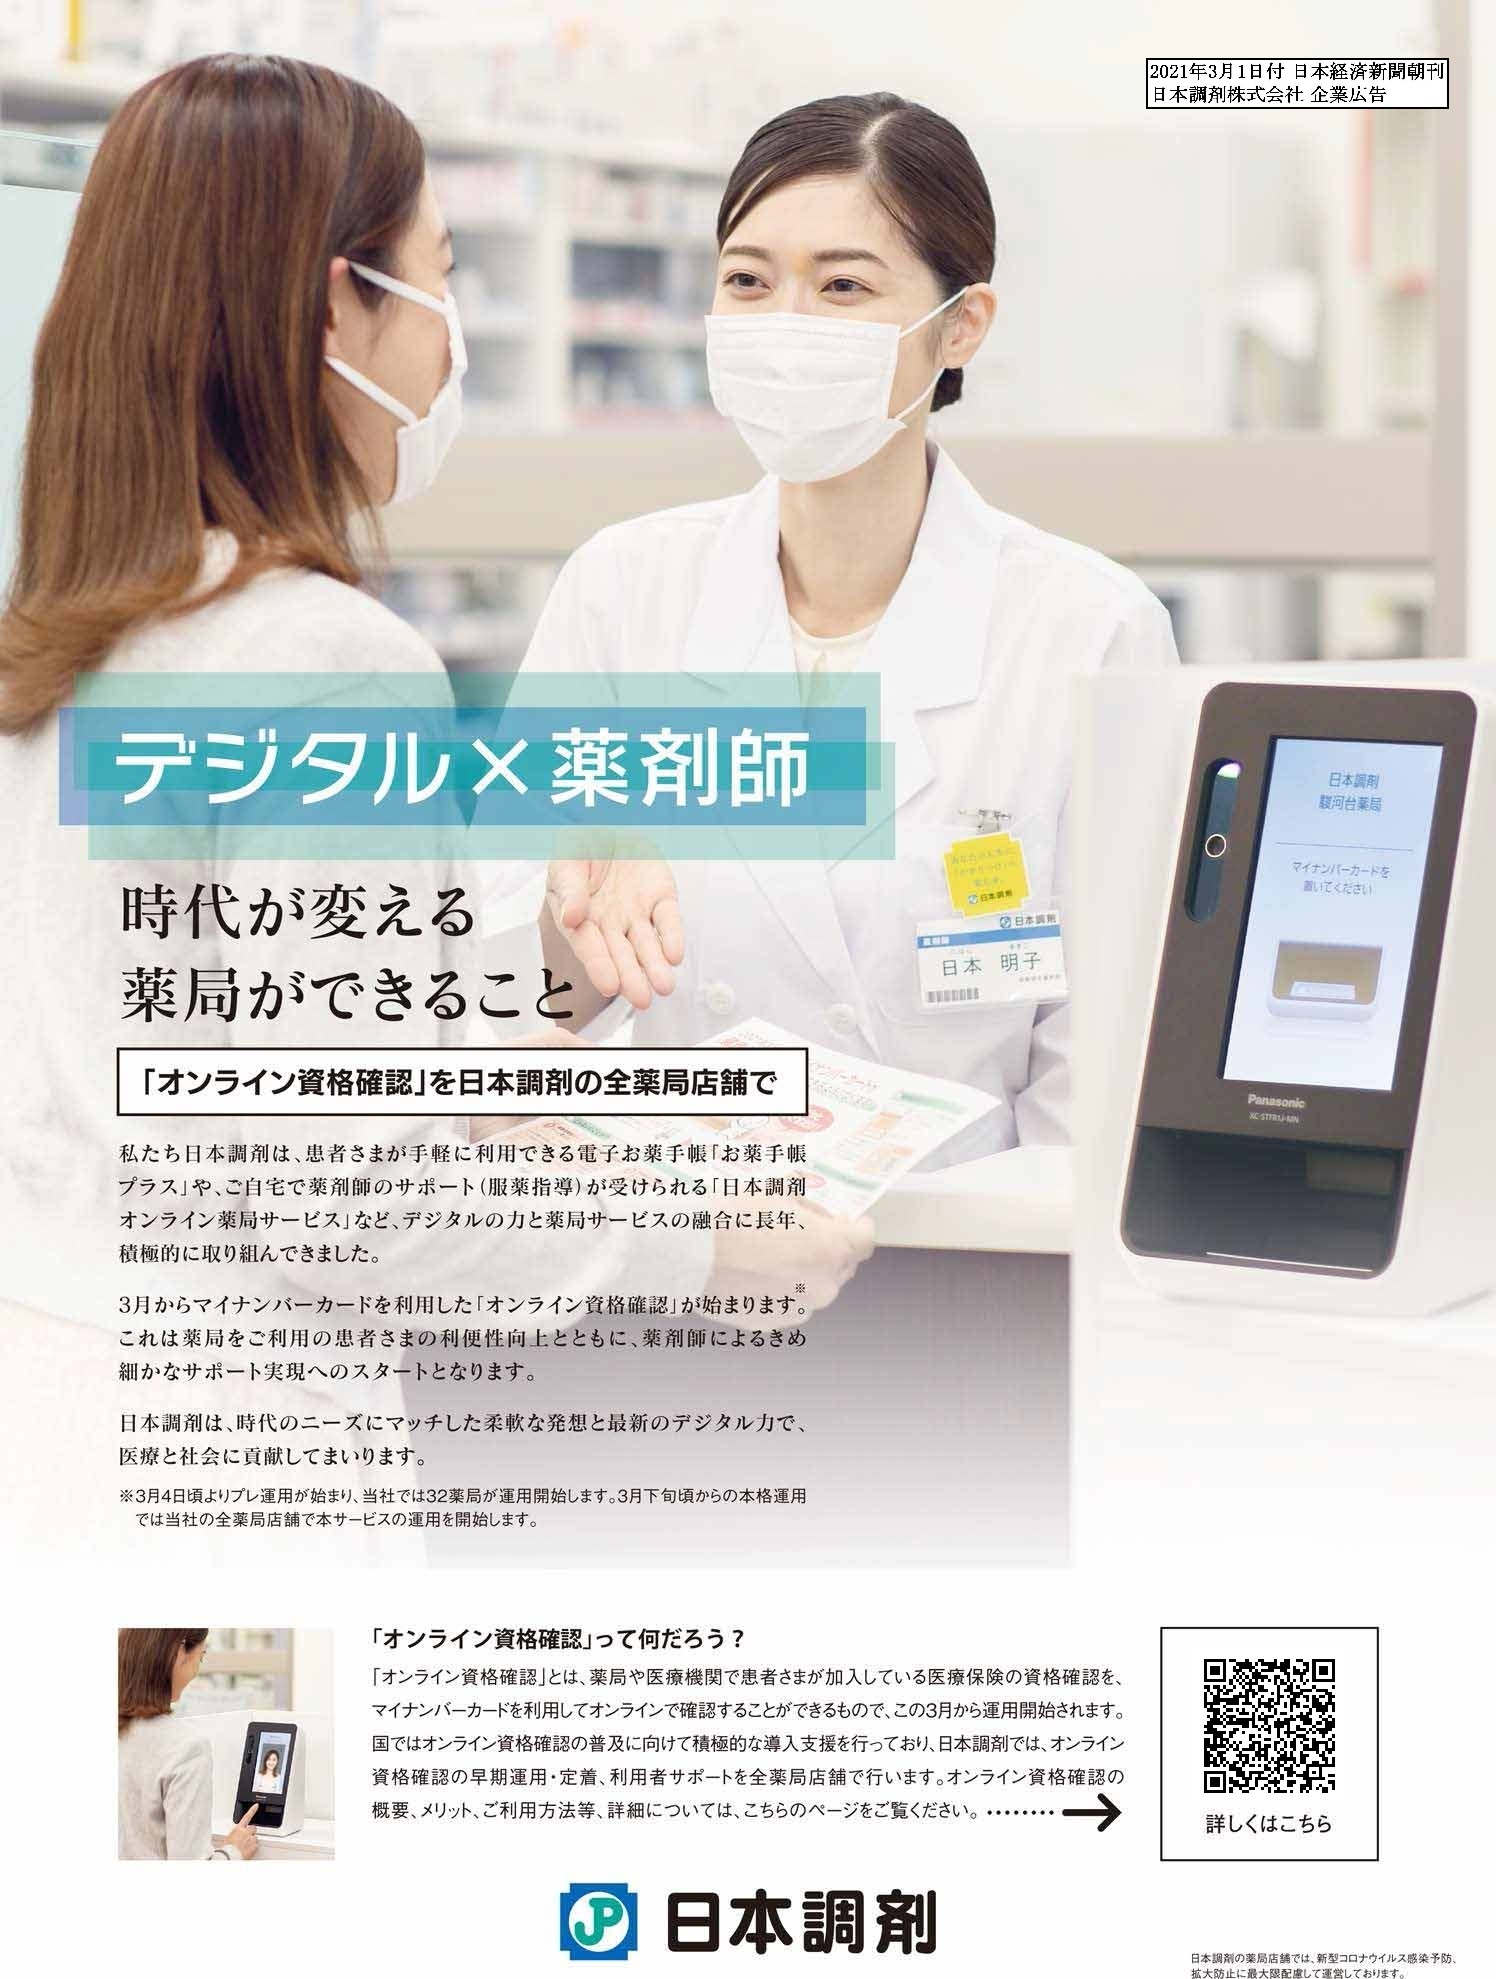 日本調剤企業広告